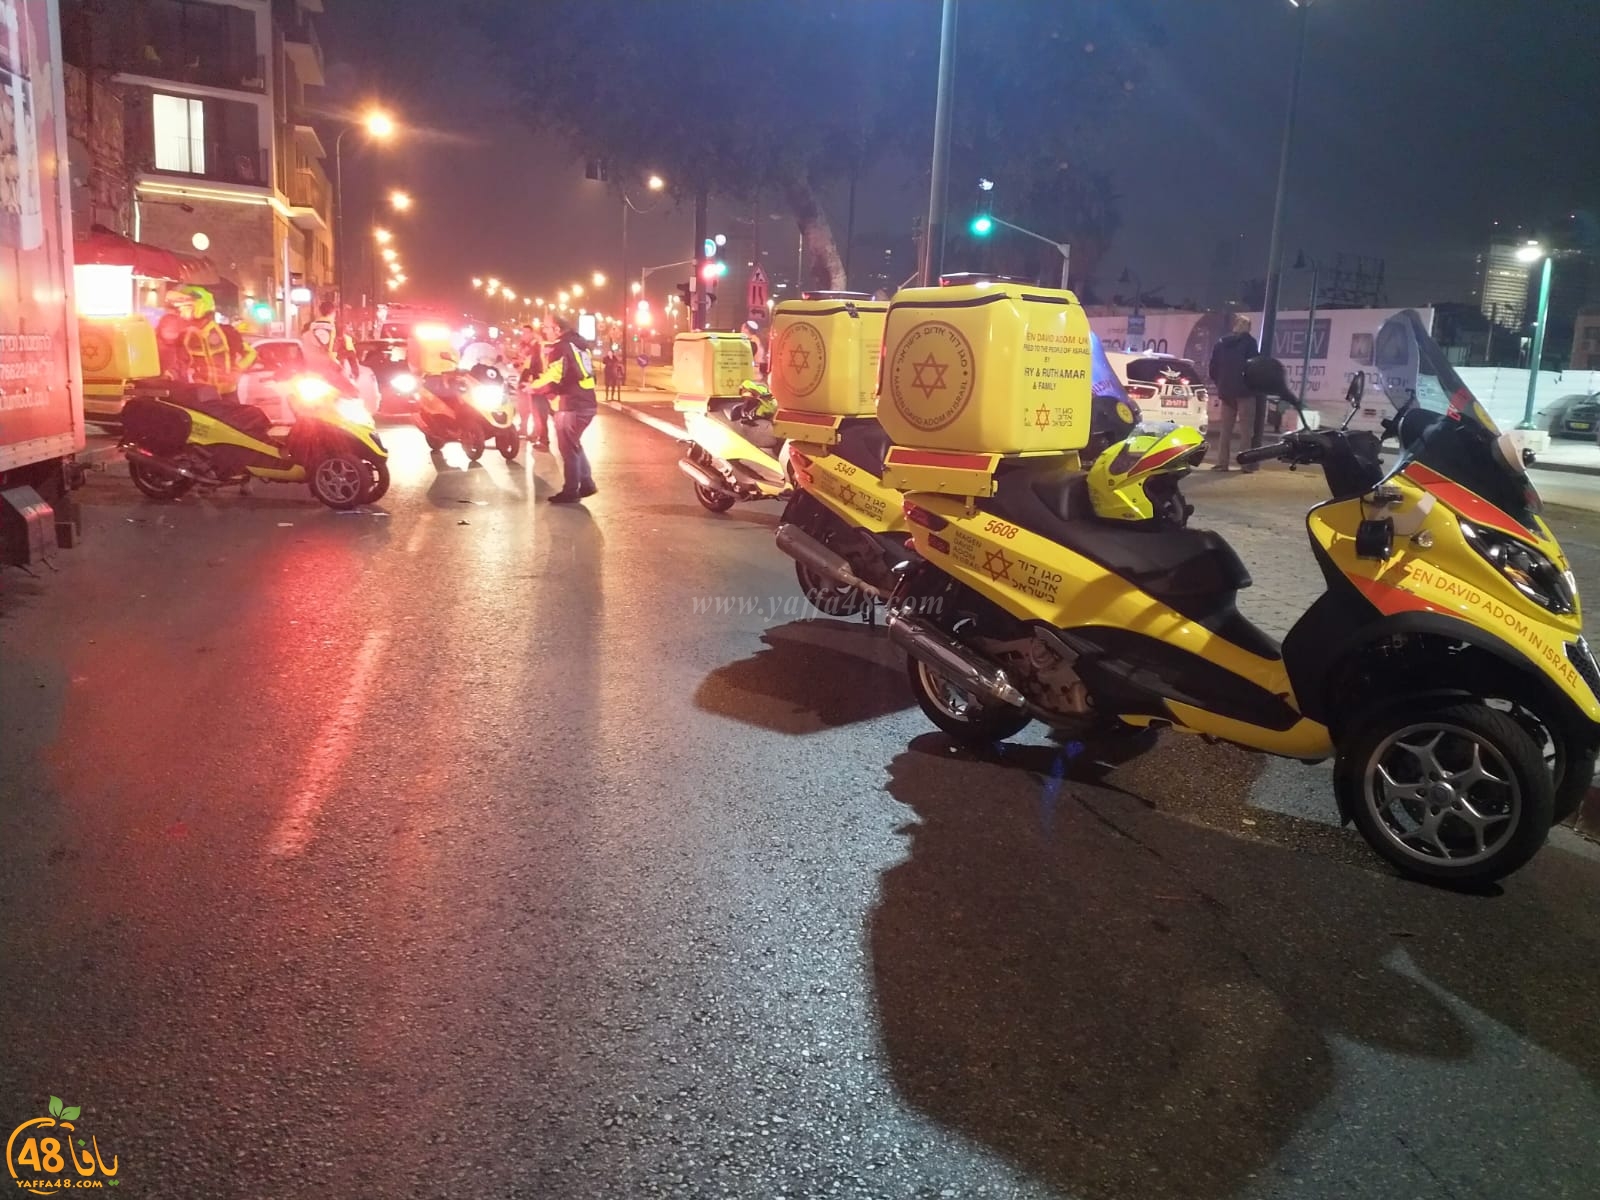 بالصور: اصابة متوسطة لعابر سبيل بحادث دهس في يافا 